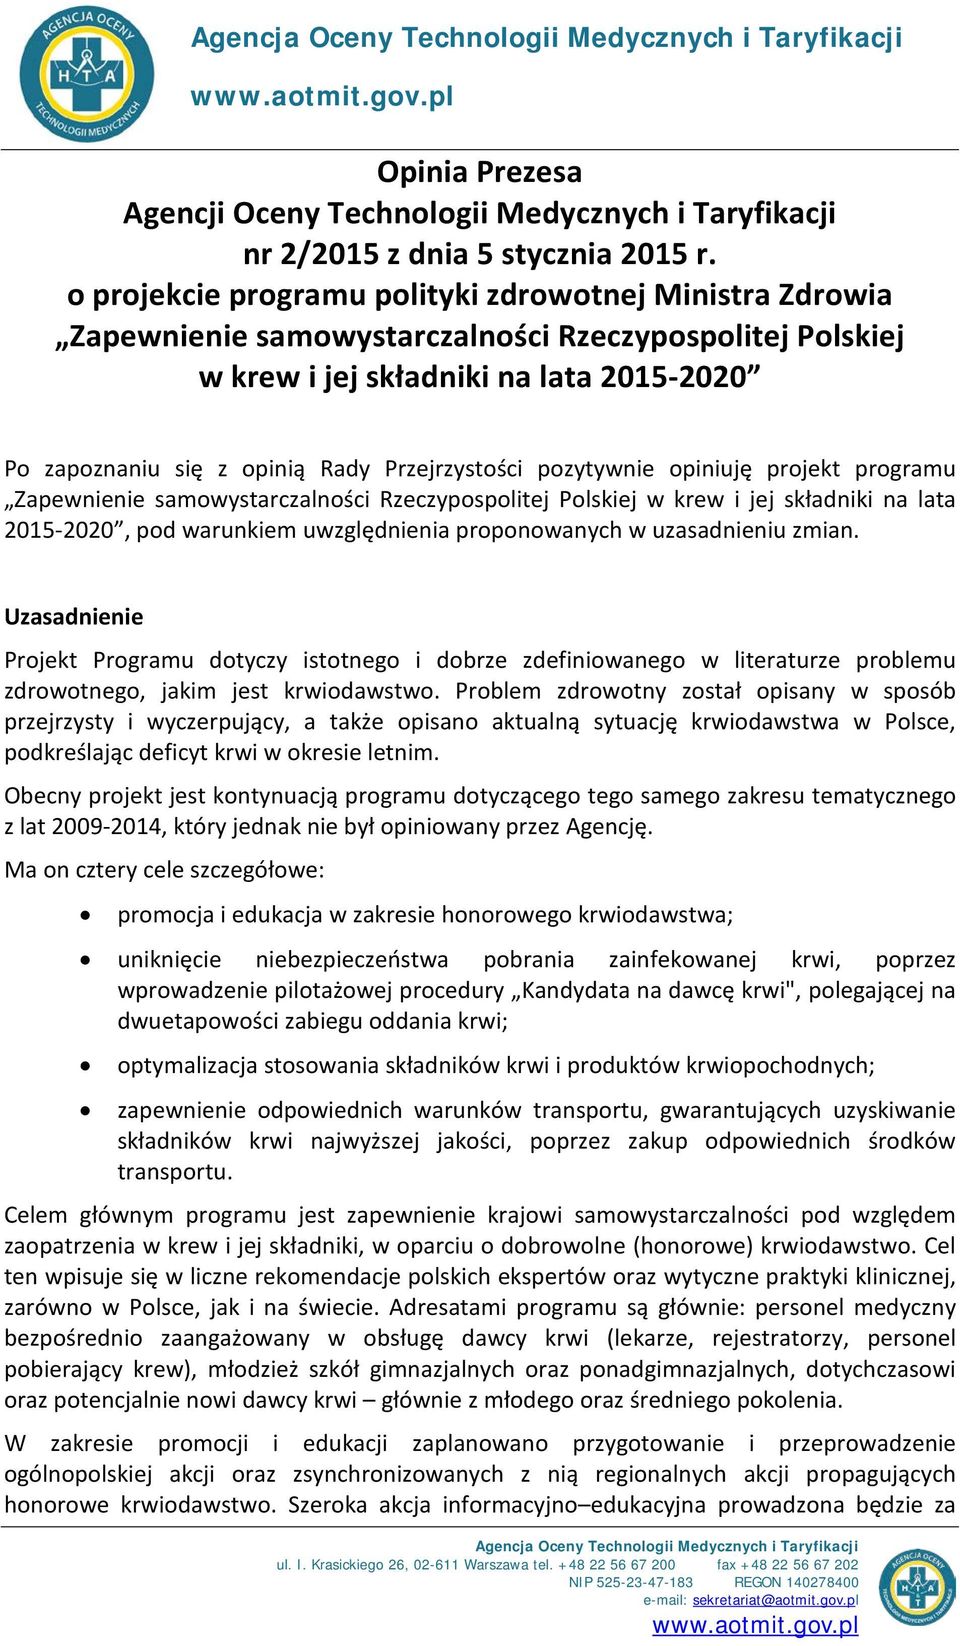 Przejrzystości pozytywnie opiniuję projekt programu Zapewnienie samowystarczalności Rzeczypospolitej Polskiej w krew i jej składniki na lata 2015-2020, pod warunkiem uwzględnienia proponowanych w